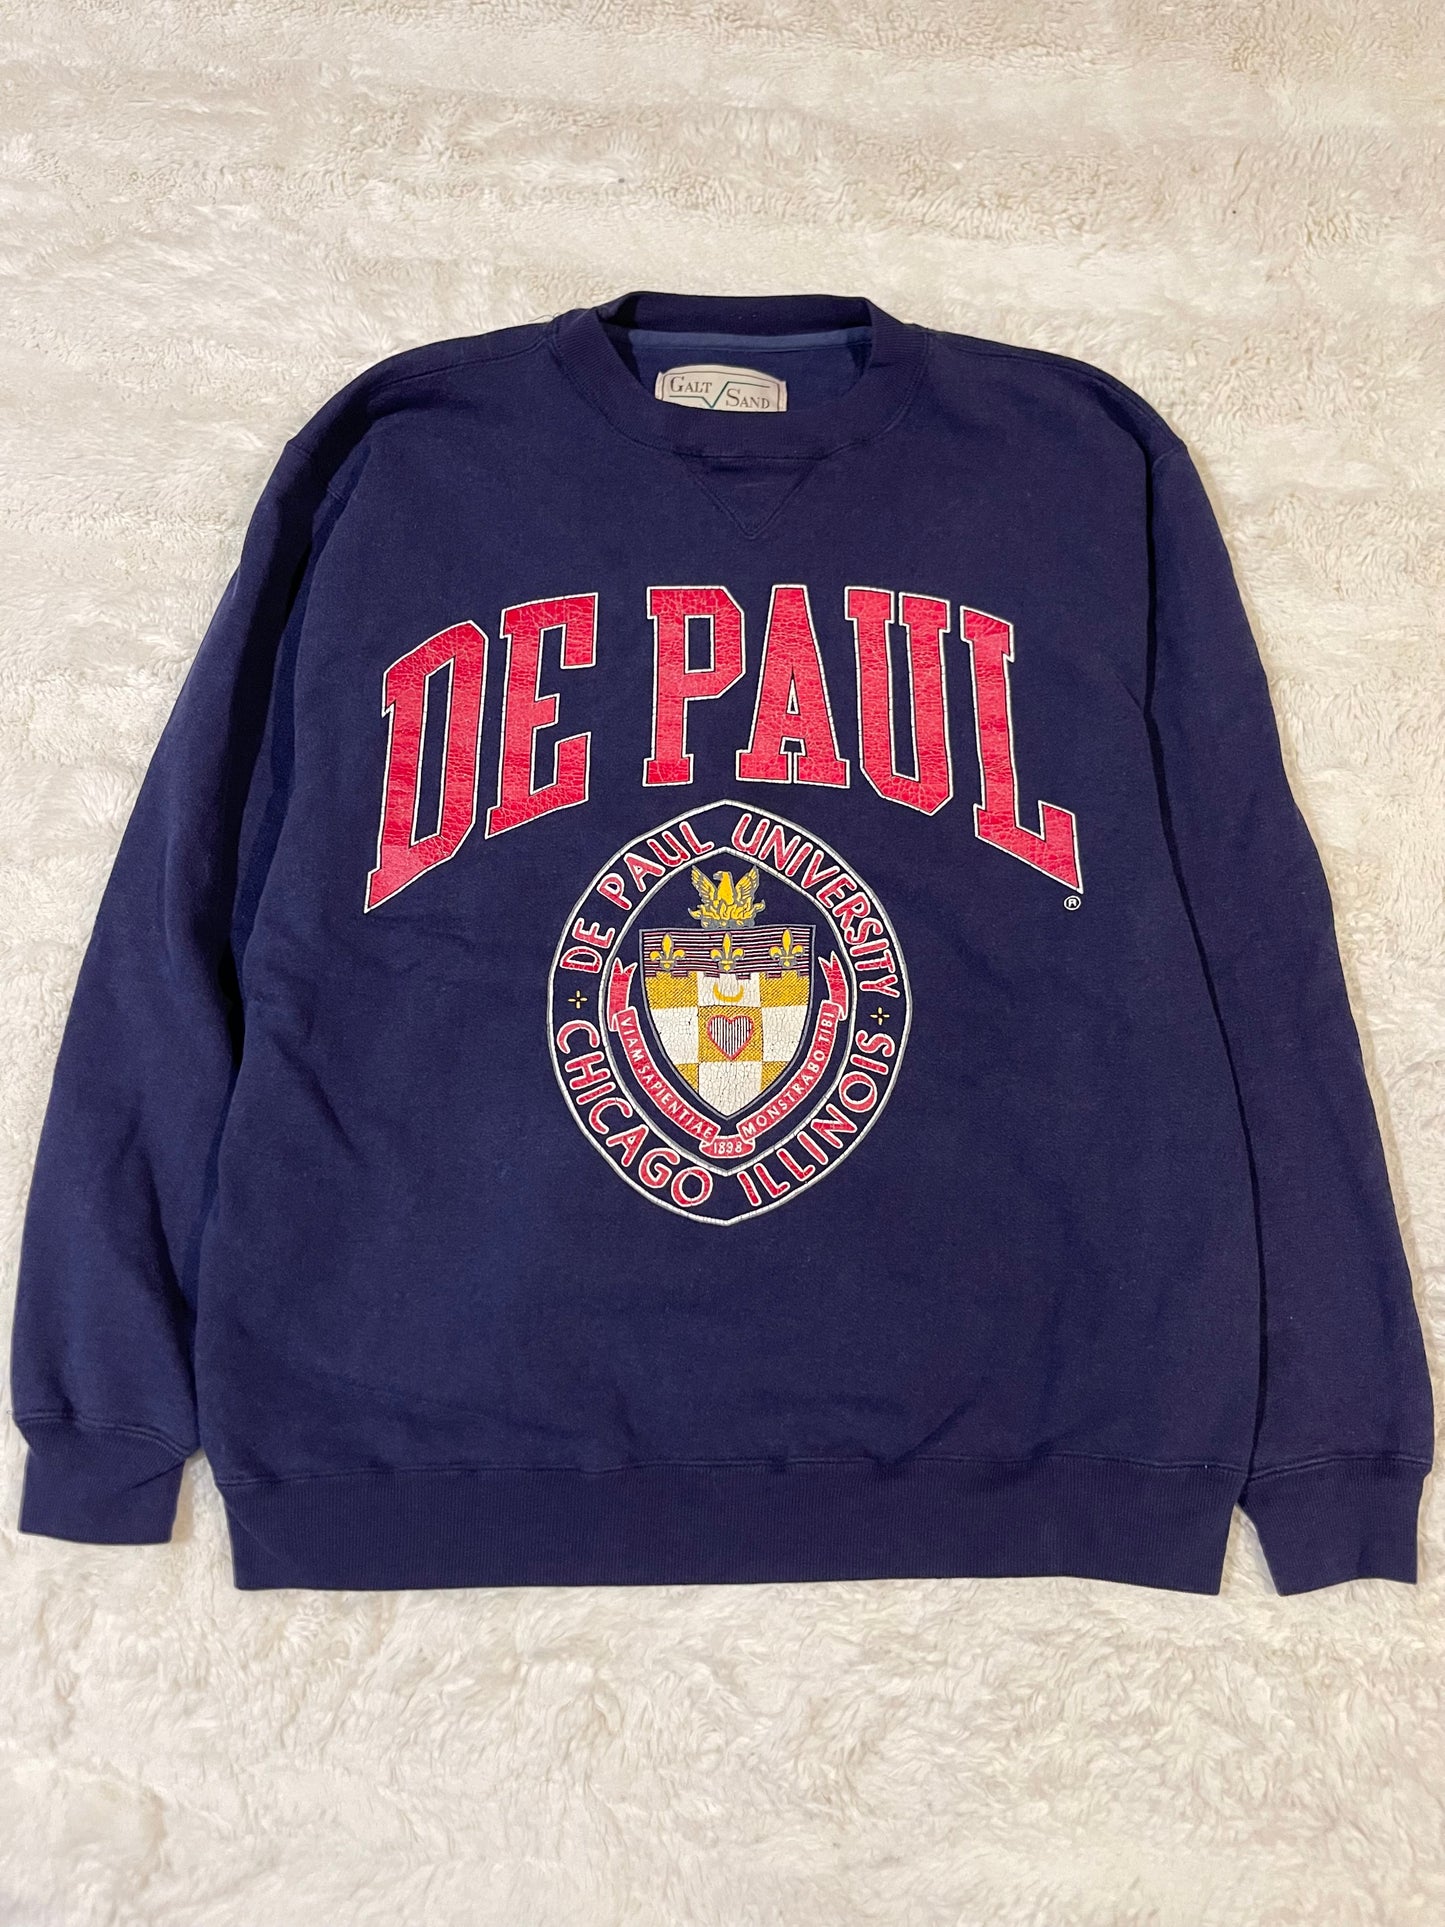 90s De Paul University Crewneck (L)